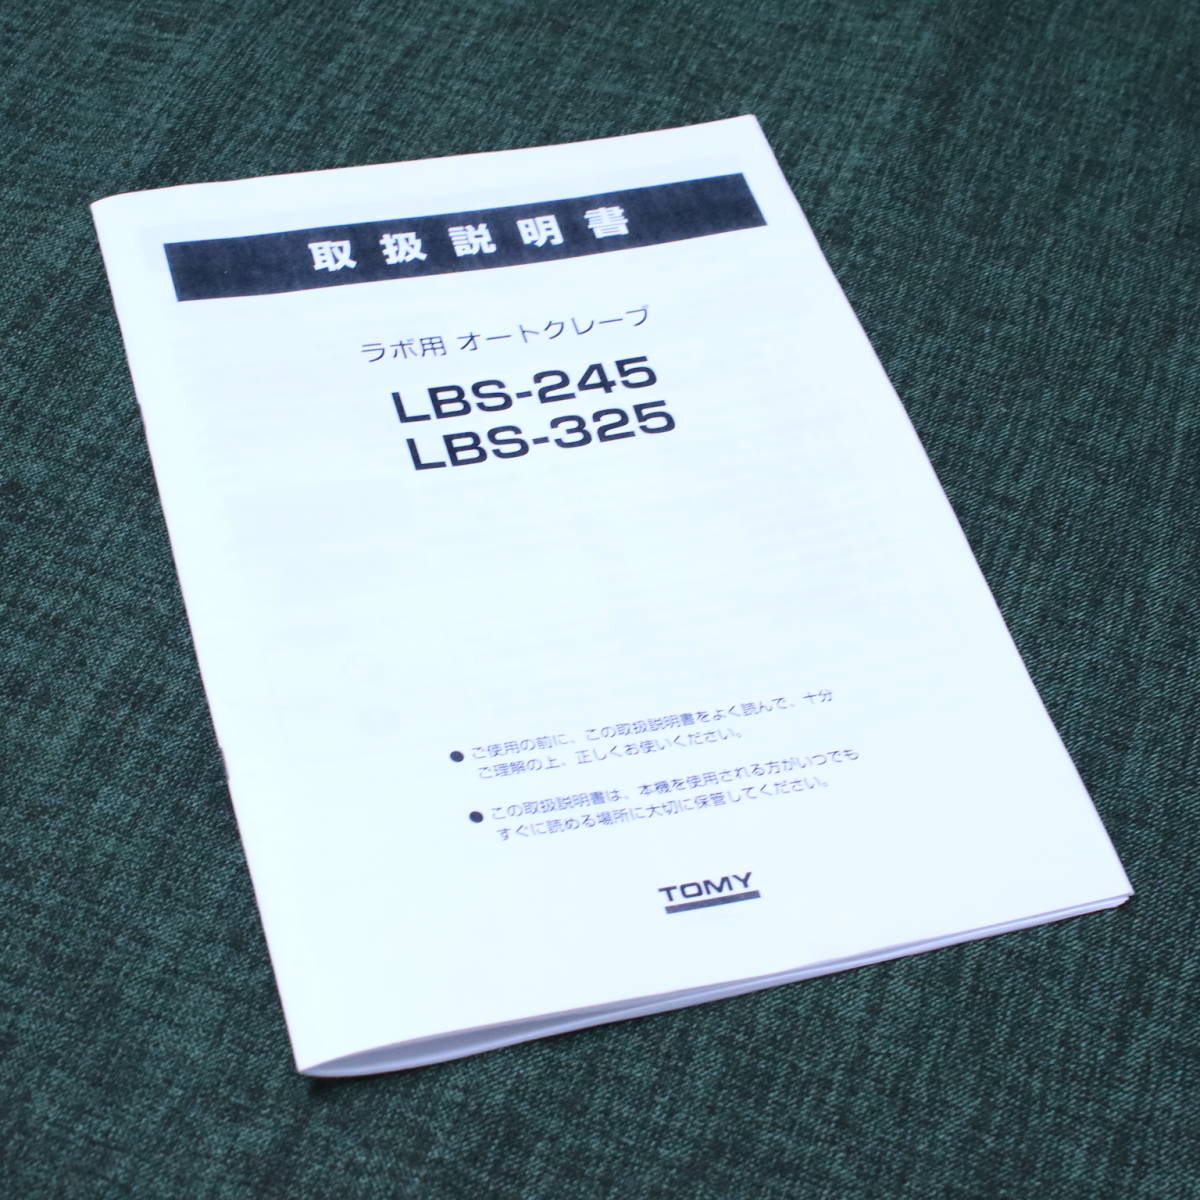 あ//A6520 【美品】トミー精工 オートクレーブ LBS-245 高圧蒸気滅菌器 2012年製 取扱説明書付きの画像6